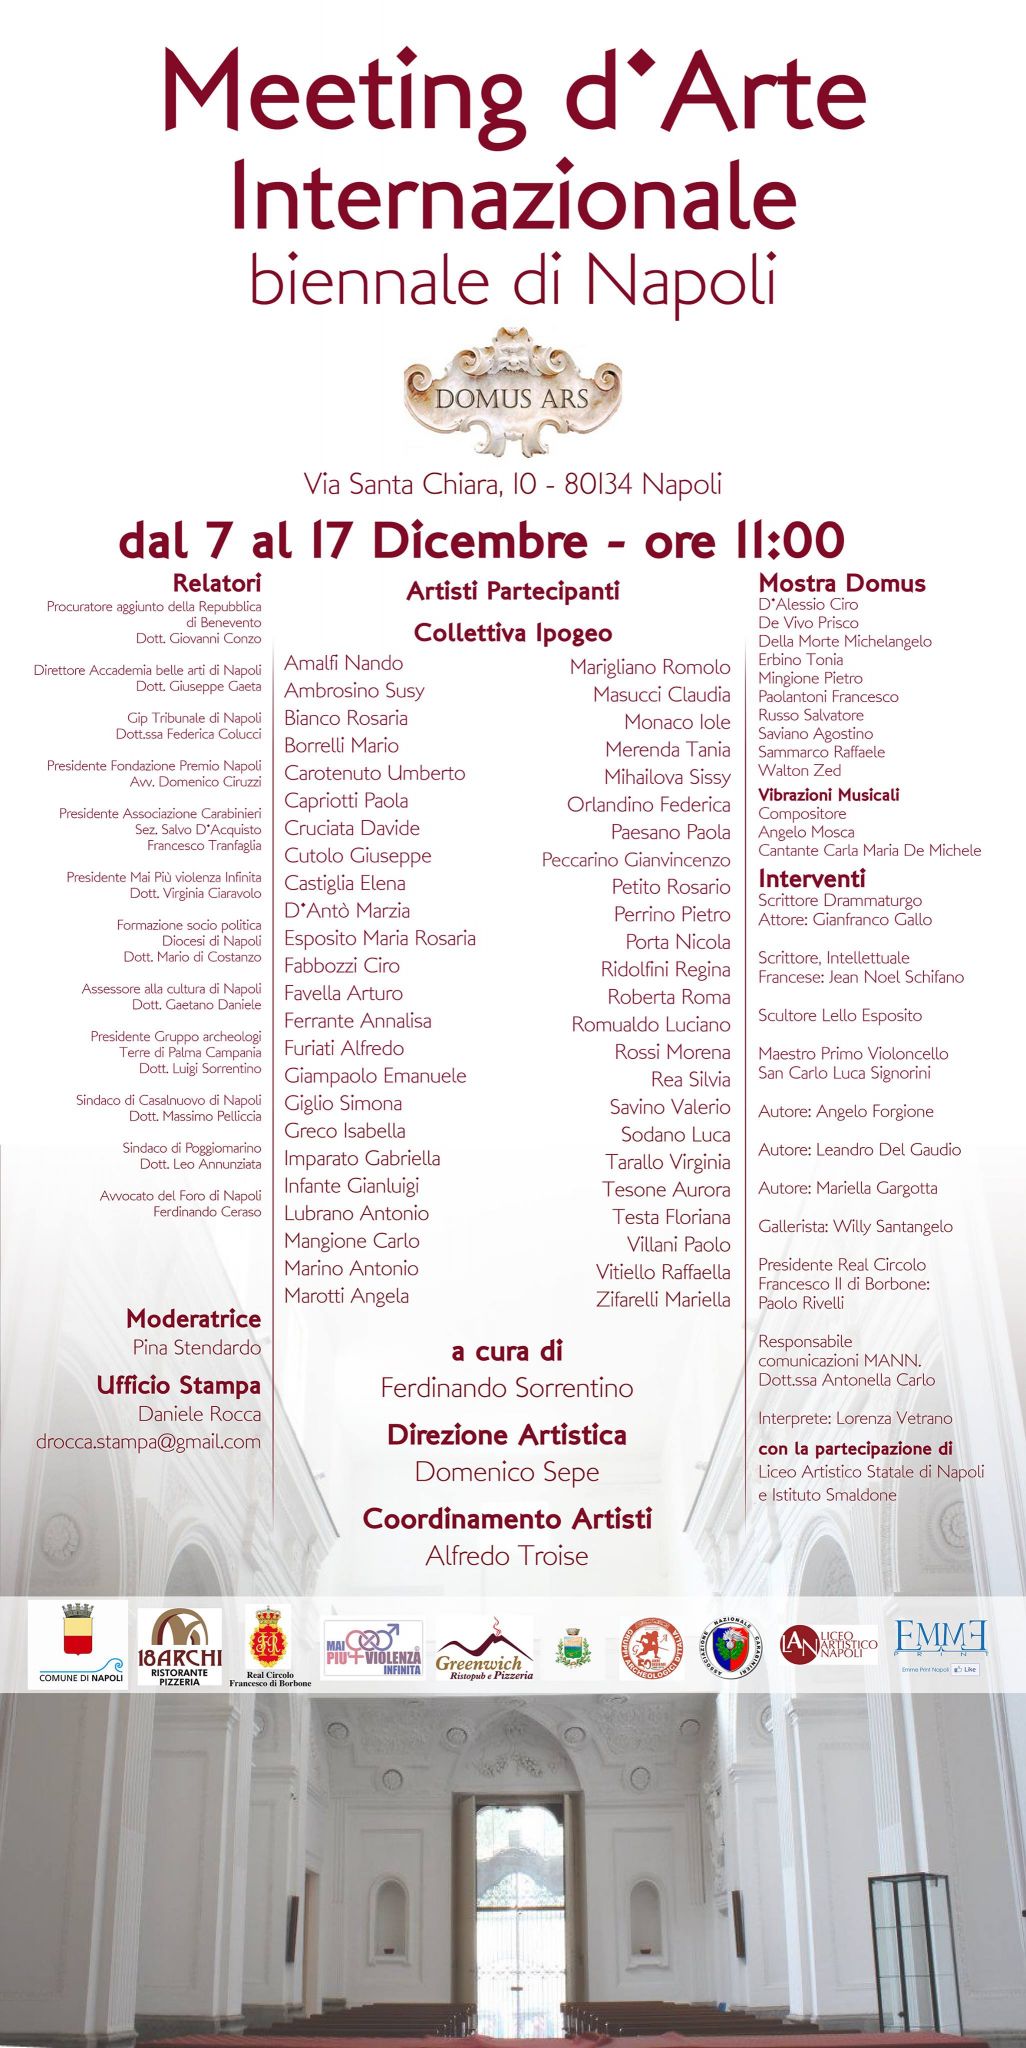 Meeting D’Arte Internazionale Biennale di Napoli presso il Centro di Cultura Domus Ars